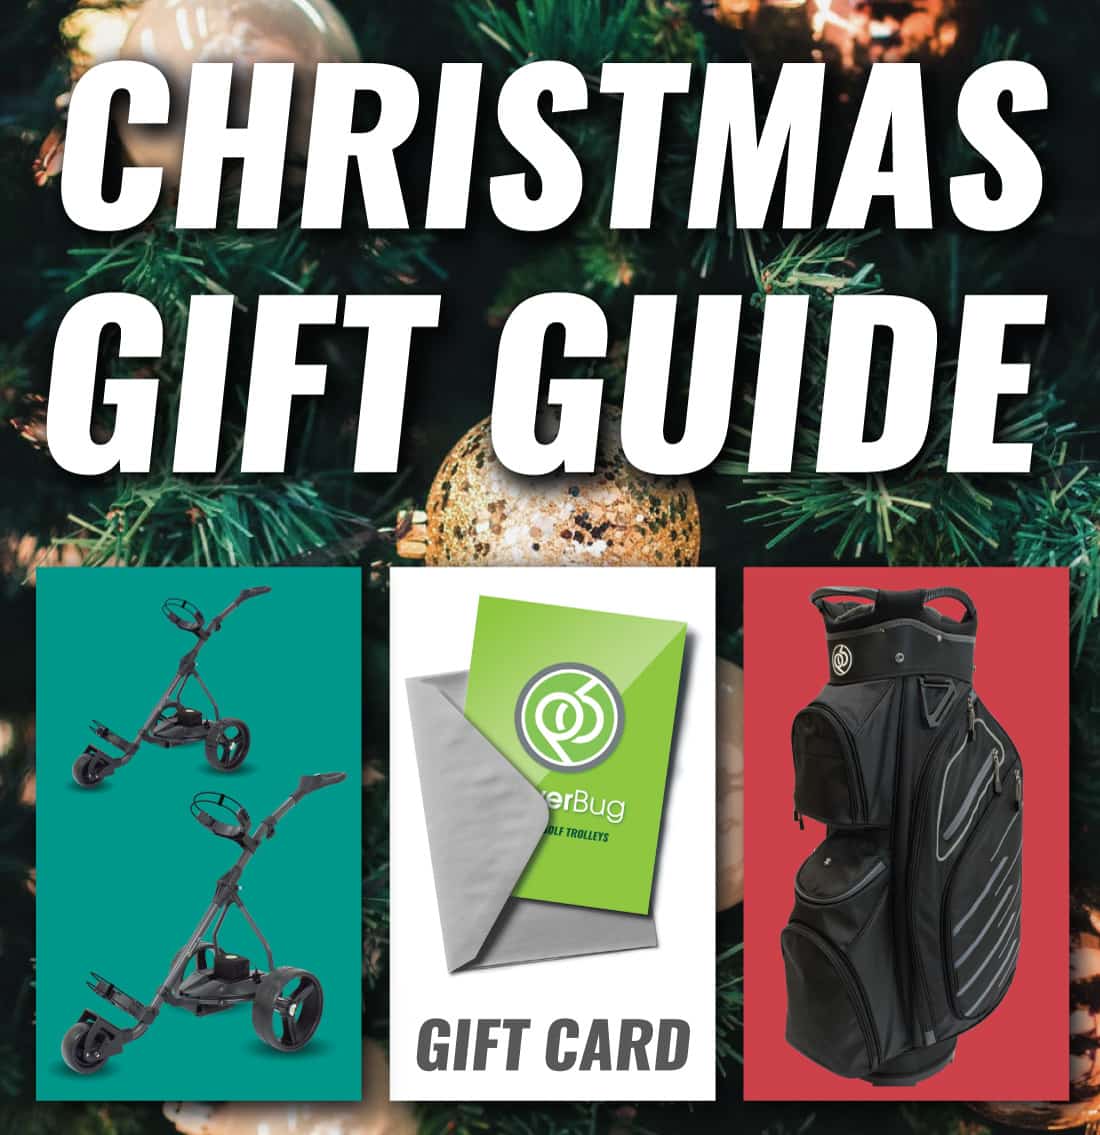 PowerBug Christmas Gift Guide